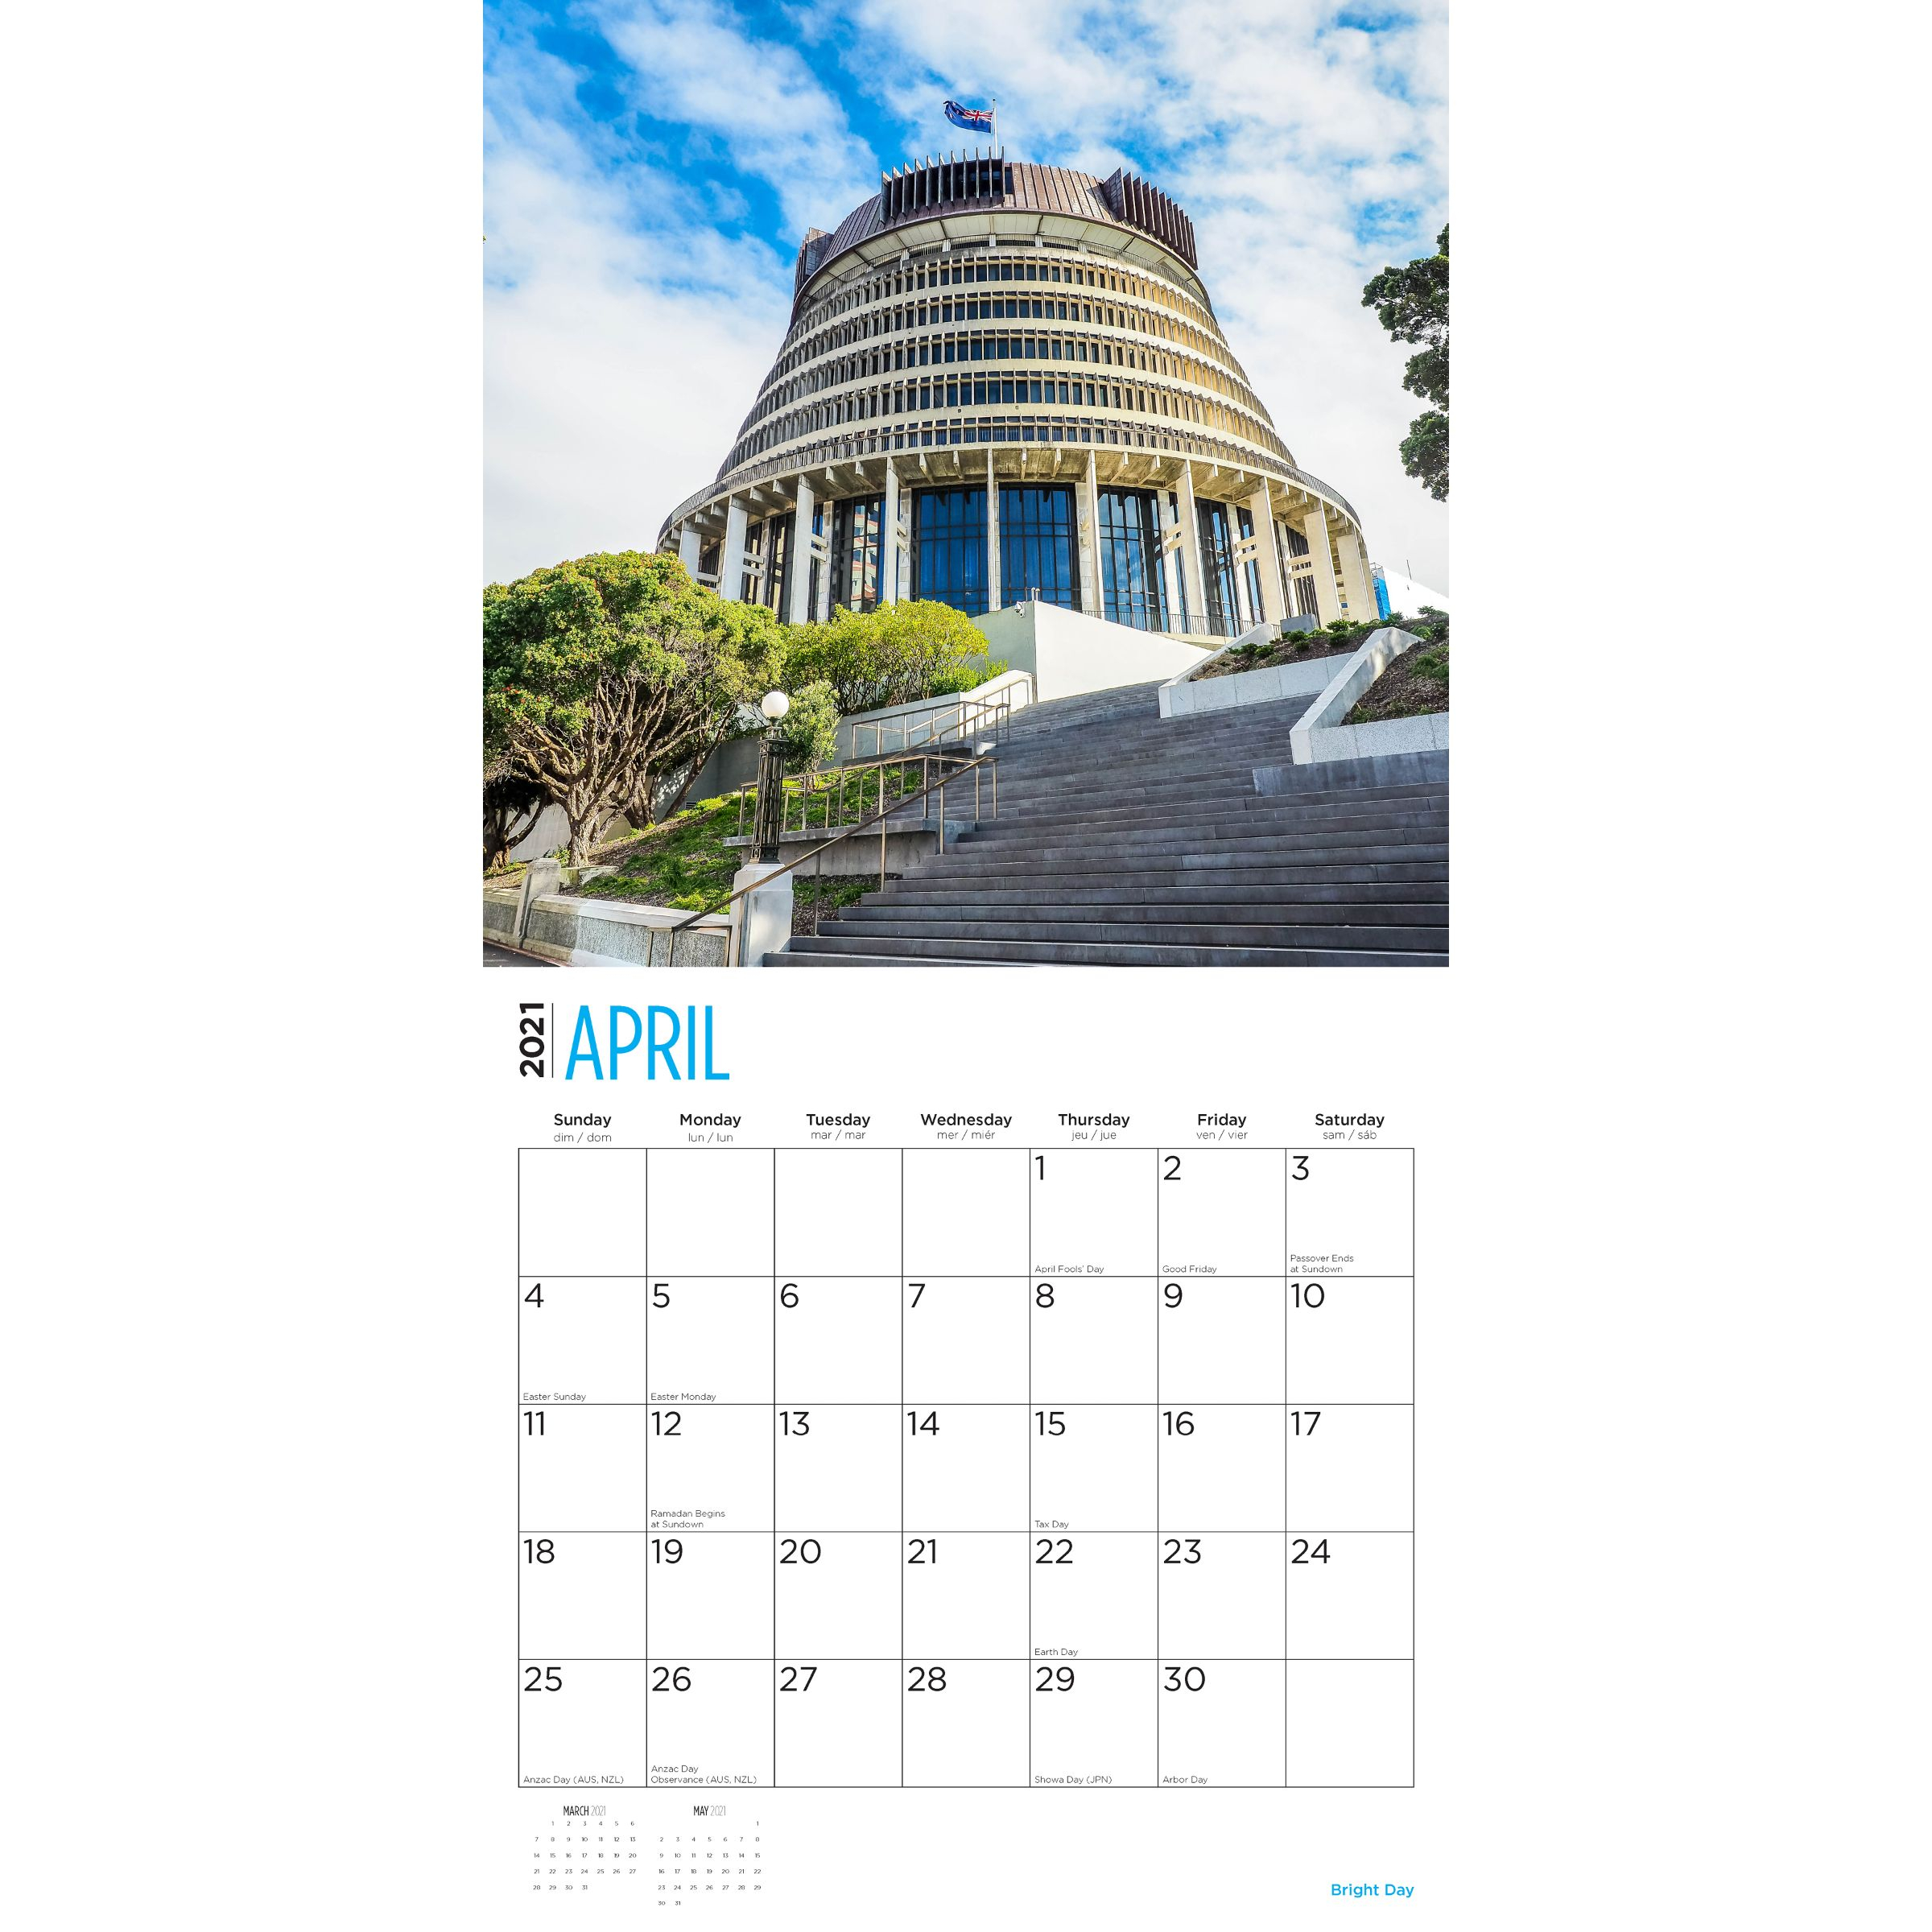 2021 New Zealand Wall Calendar - Bright Day Calendars